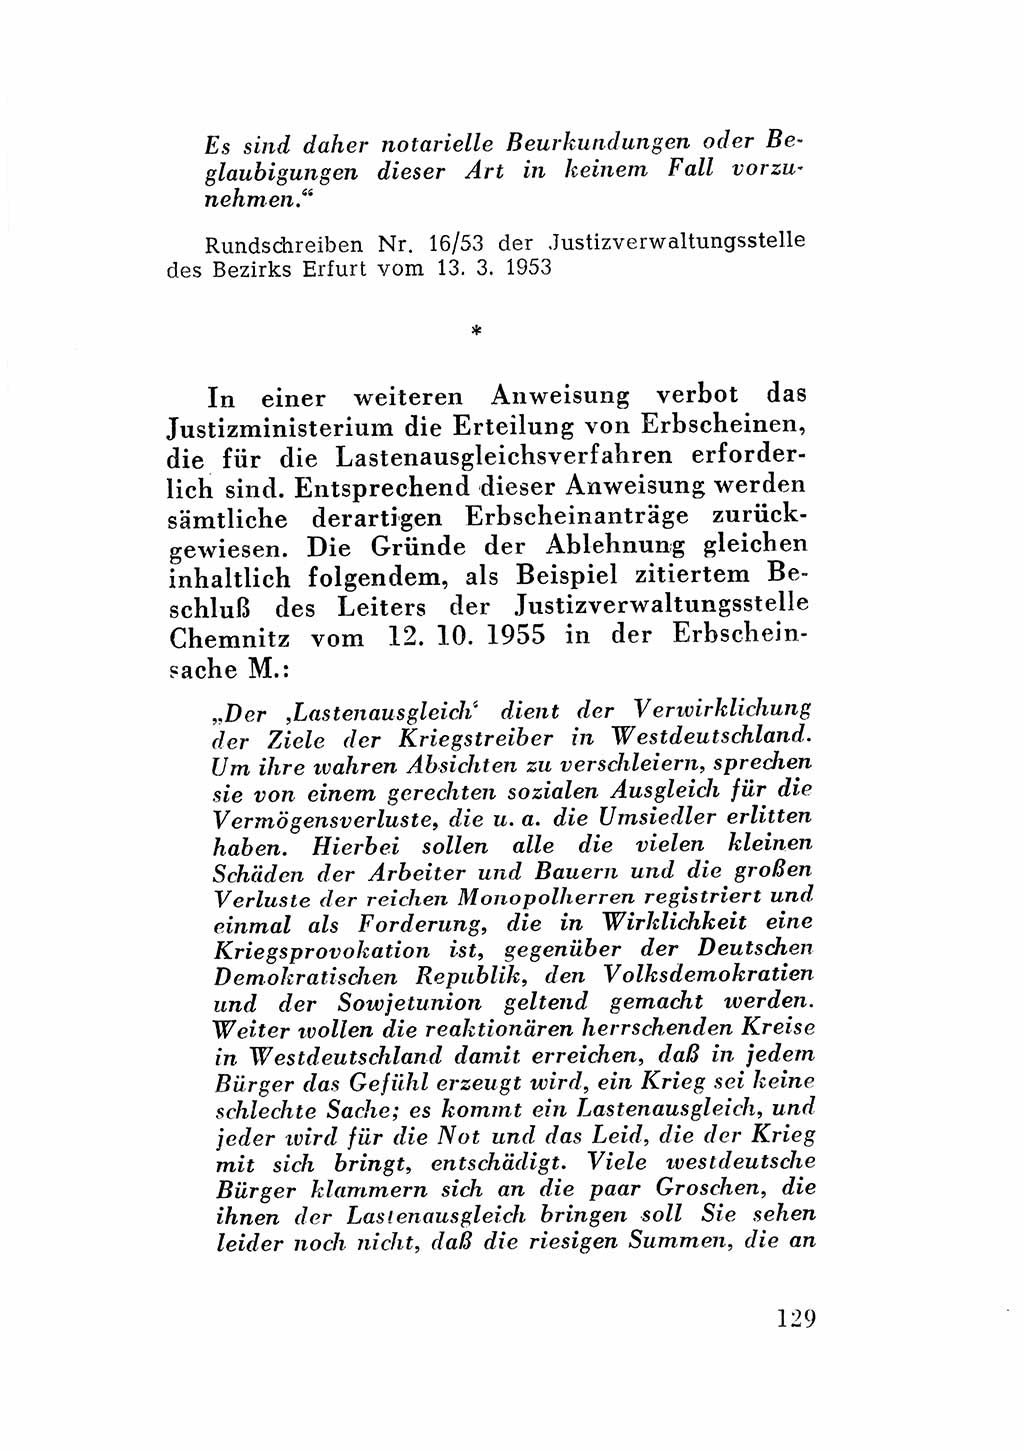 Katalog des Unrechts, Untersuchungsausschuß Freiheitlicher Juristen (UfJ) [Bundesrepublik Deutschland (BRD)] 1956, Seite 129 (Kat. UnR. UfJ BRD 1956, S. 129)